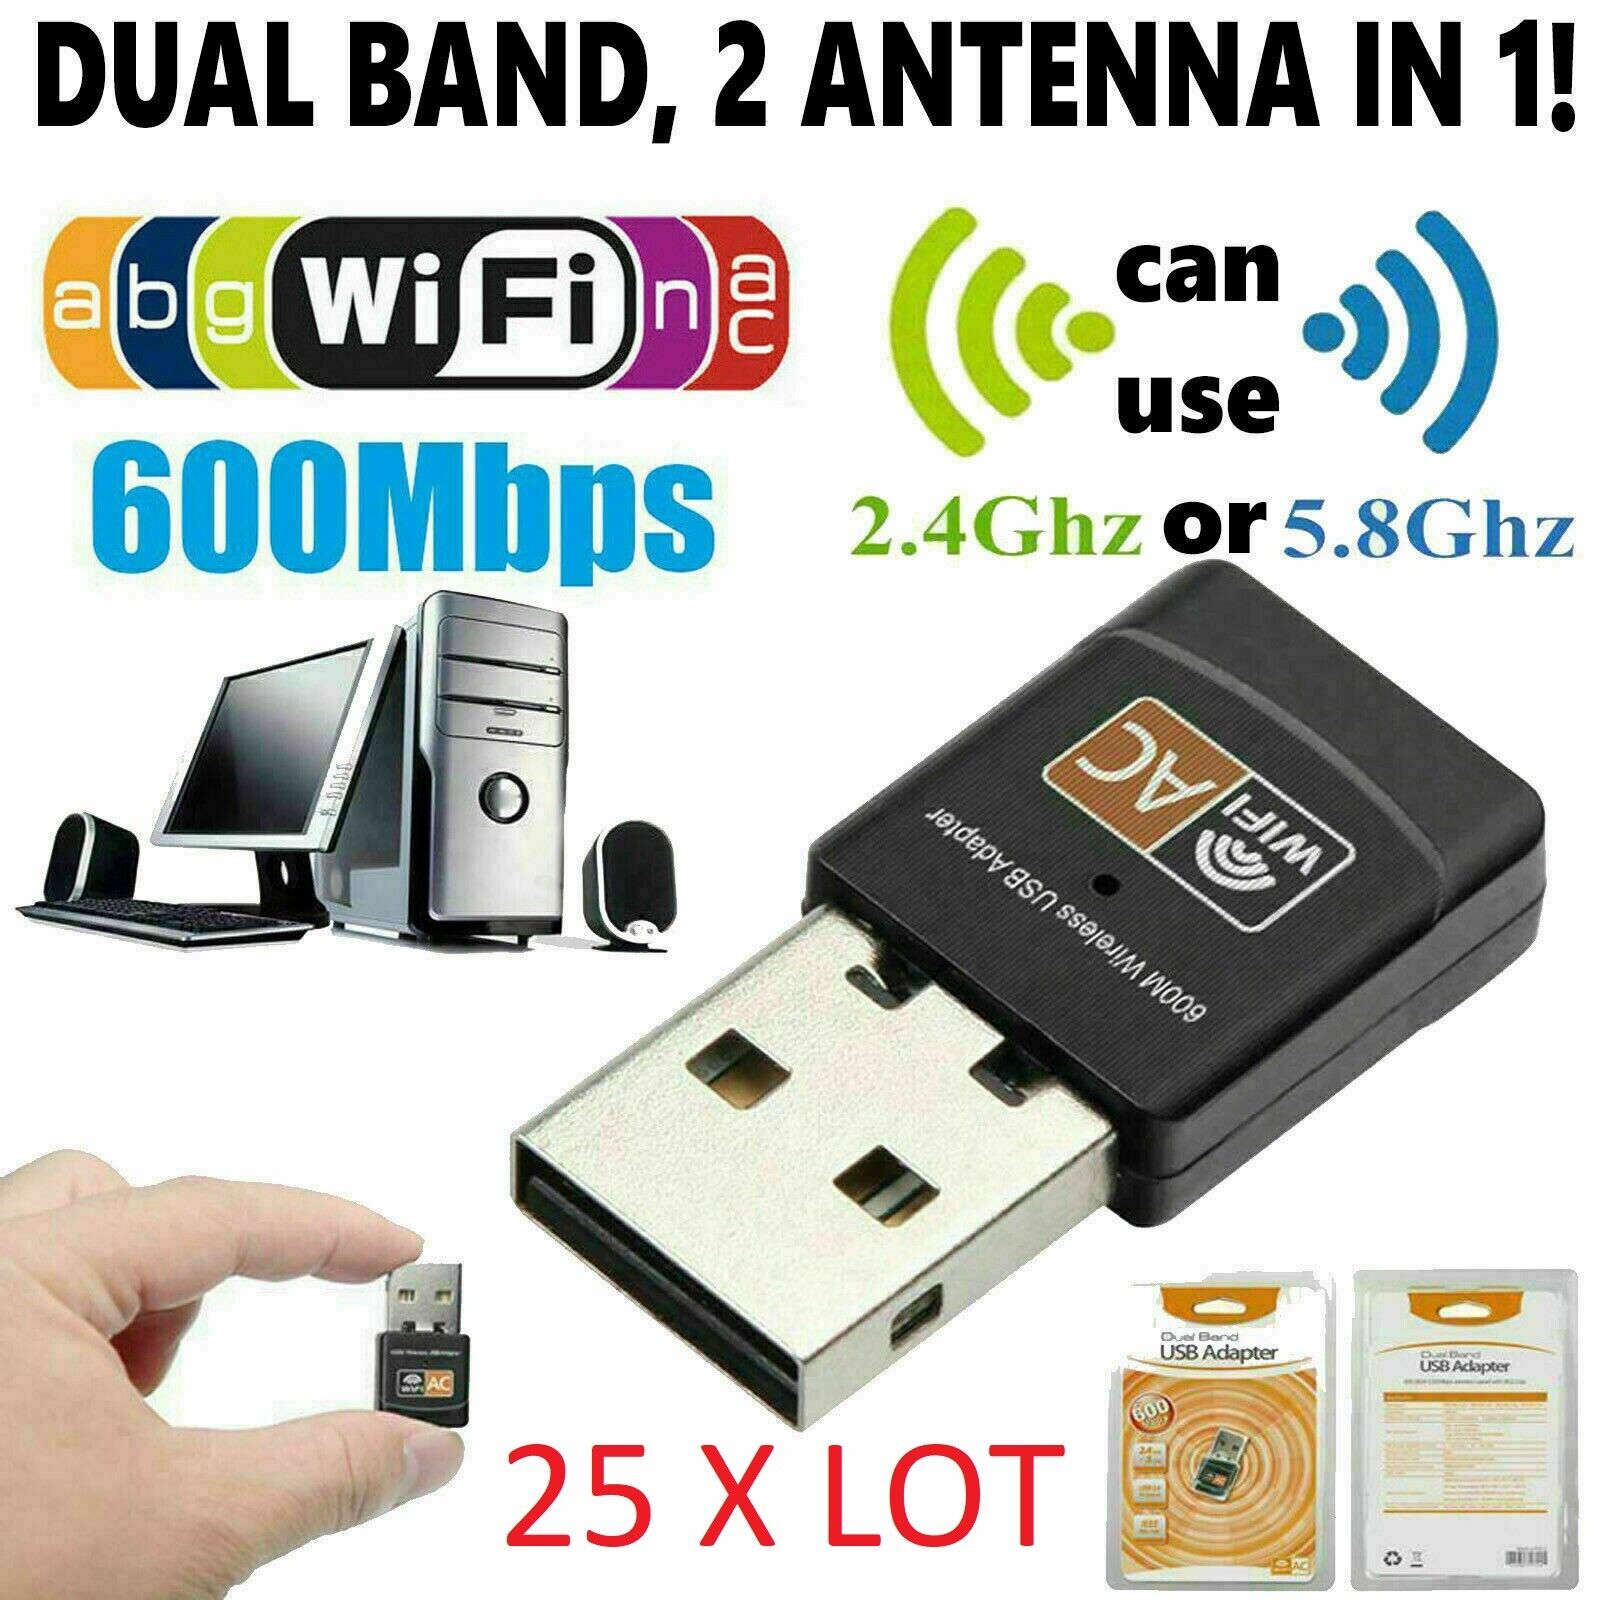 25 X LOT AC600 Mbps Dual Band 2.4/5Ghz Wireless USB Mini WiFi Network 802.11